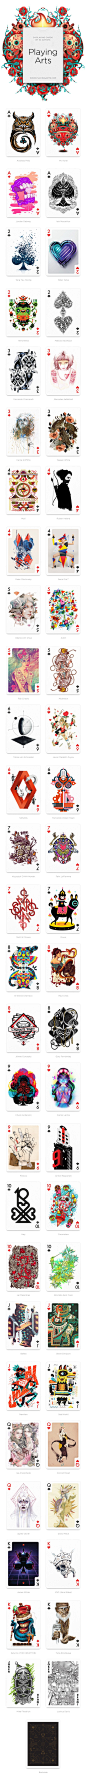 来自世界各地的54位艺术家，采用自己擅长的技术和风格绘制一张扑克牌图案，组成一套完整的扑克牌